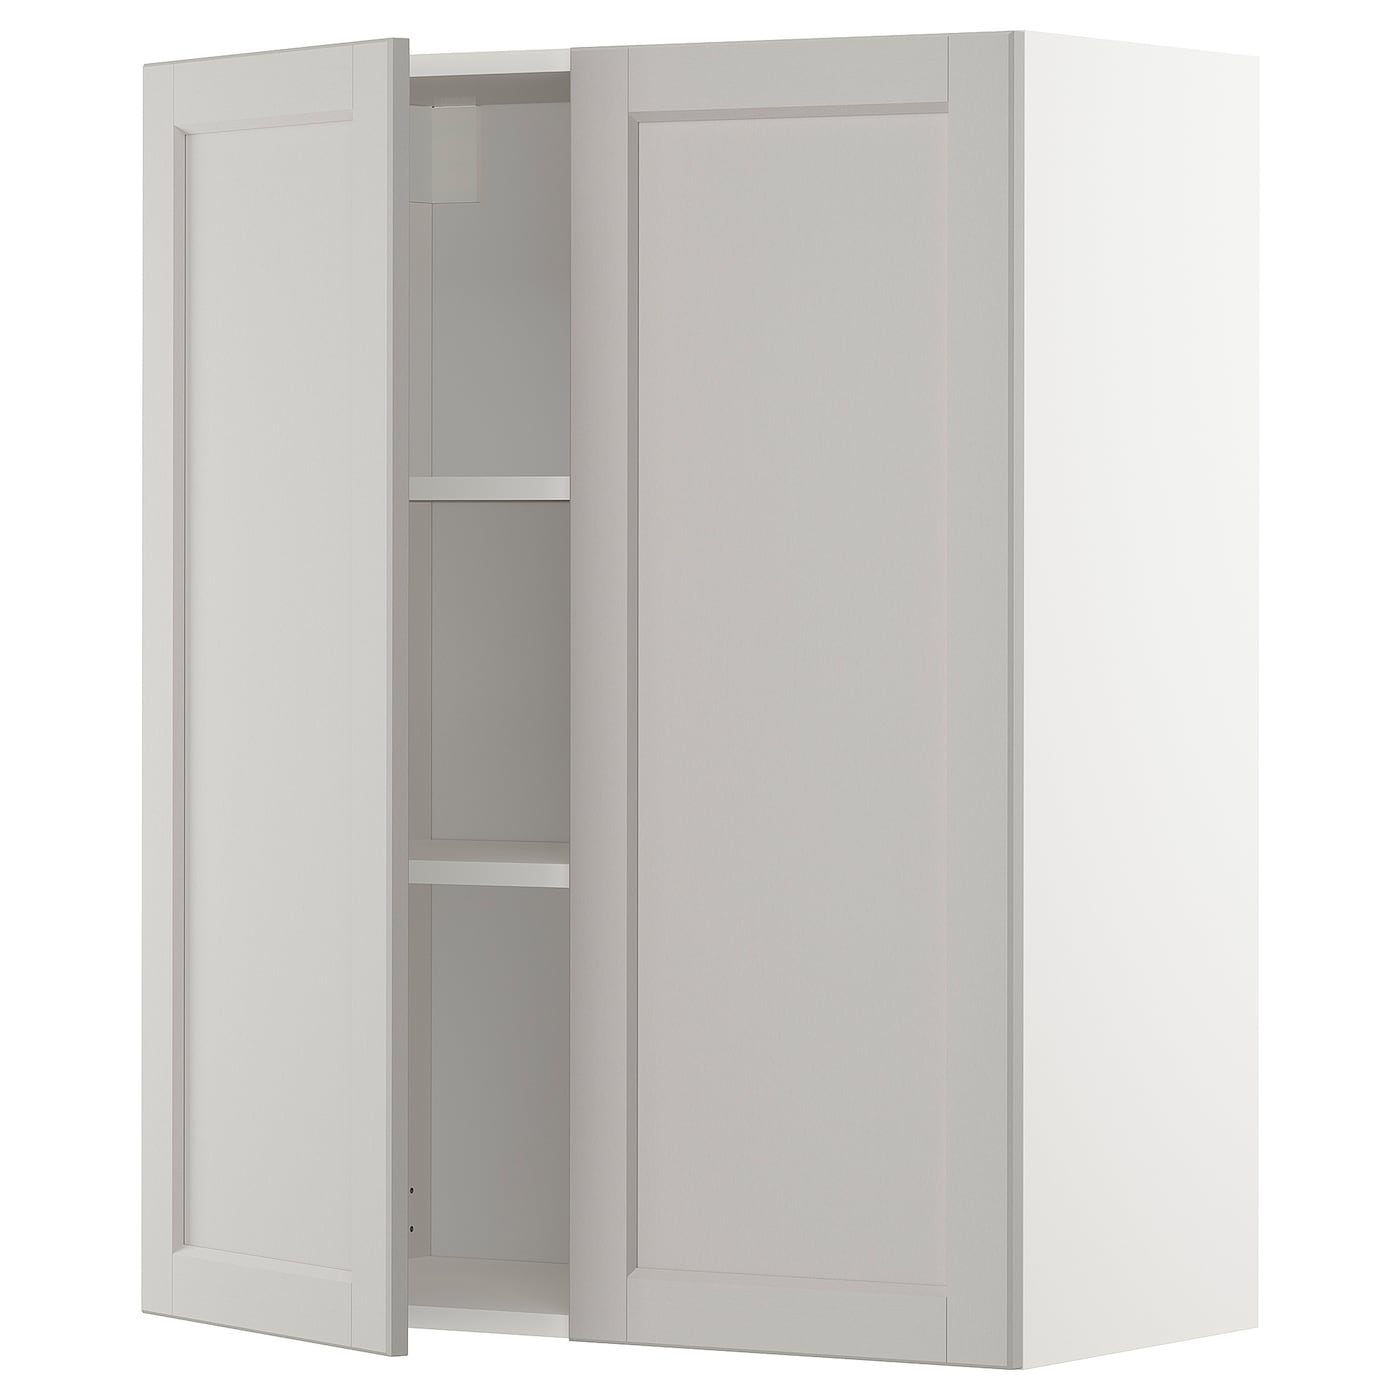 Навесной шкаф с полкой - METOD IKEA/ МЕТОД ИКЕА, 100х80 см, белый/светло-серый